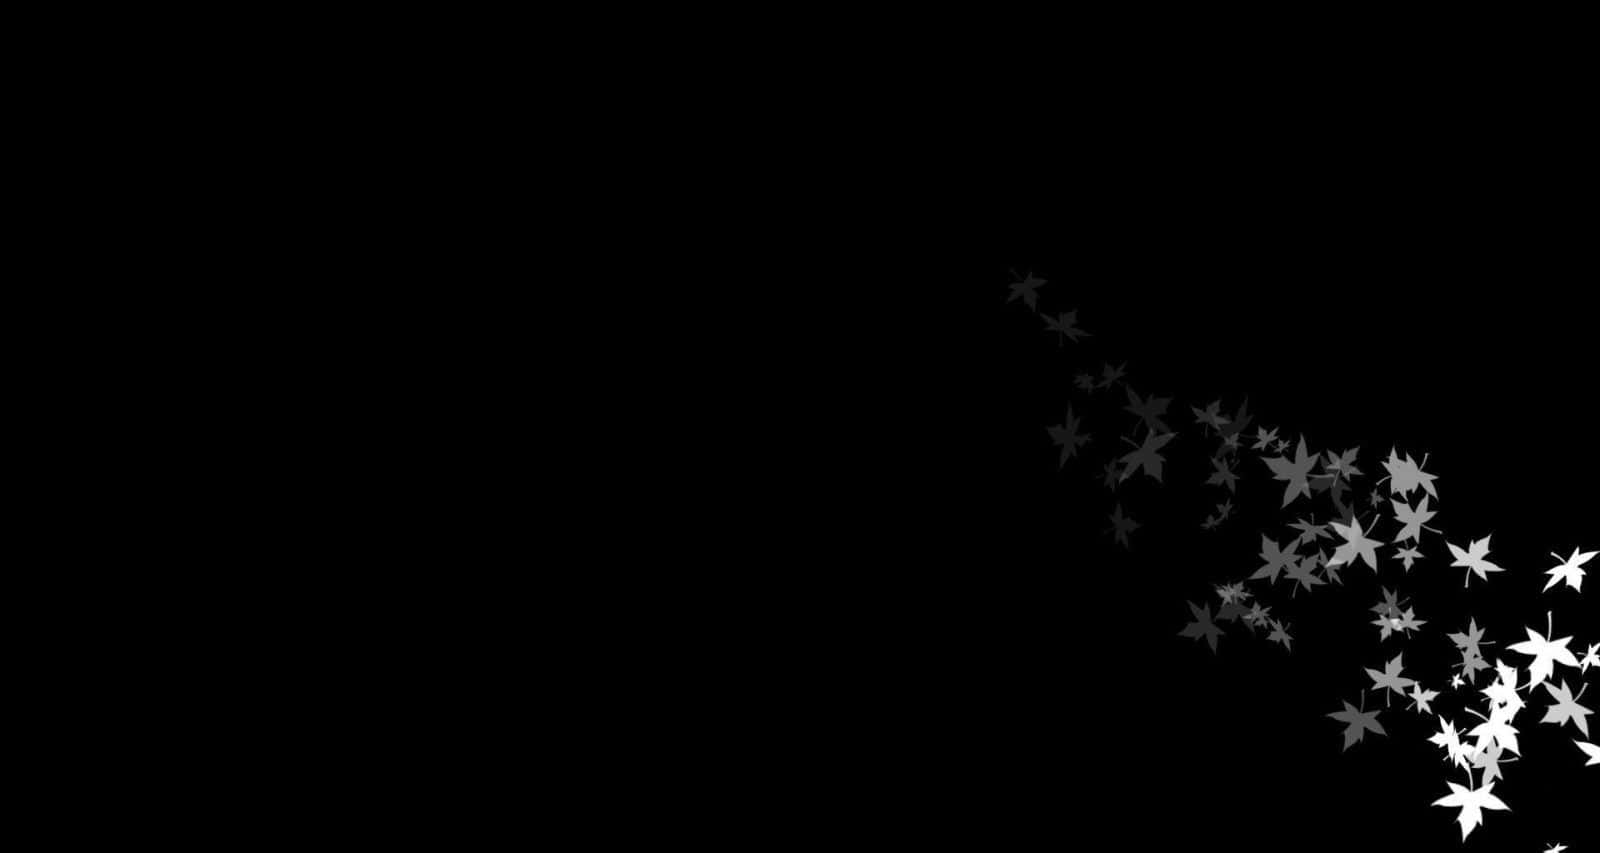 Einschwarzer Hintergrund Mit Weißen Sternen, Die Durch Die Luft Fliegen. Wallpaper